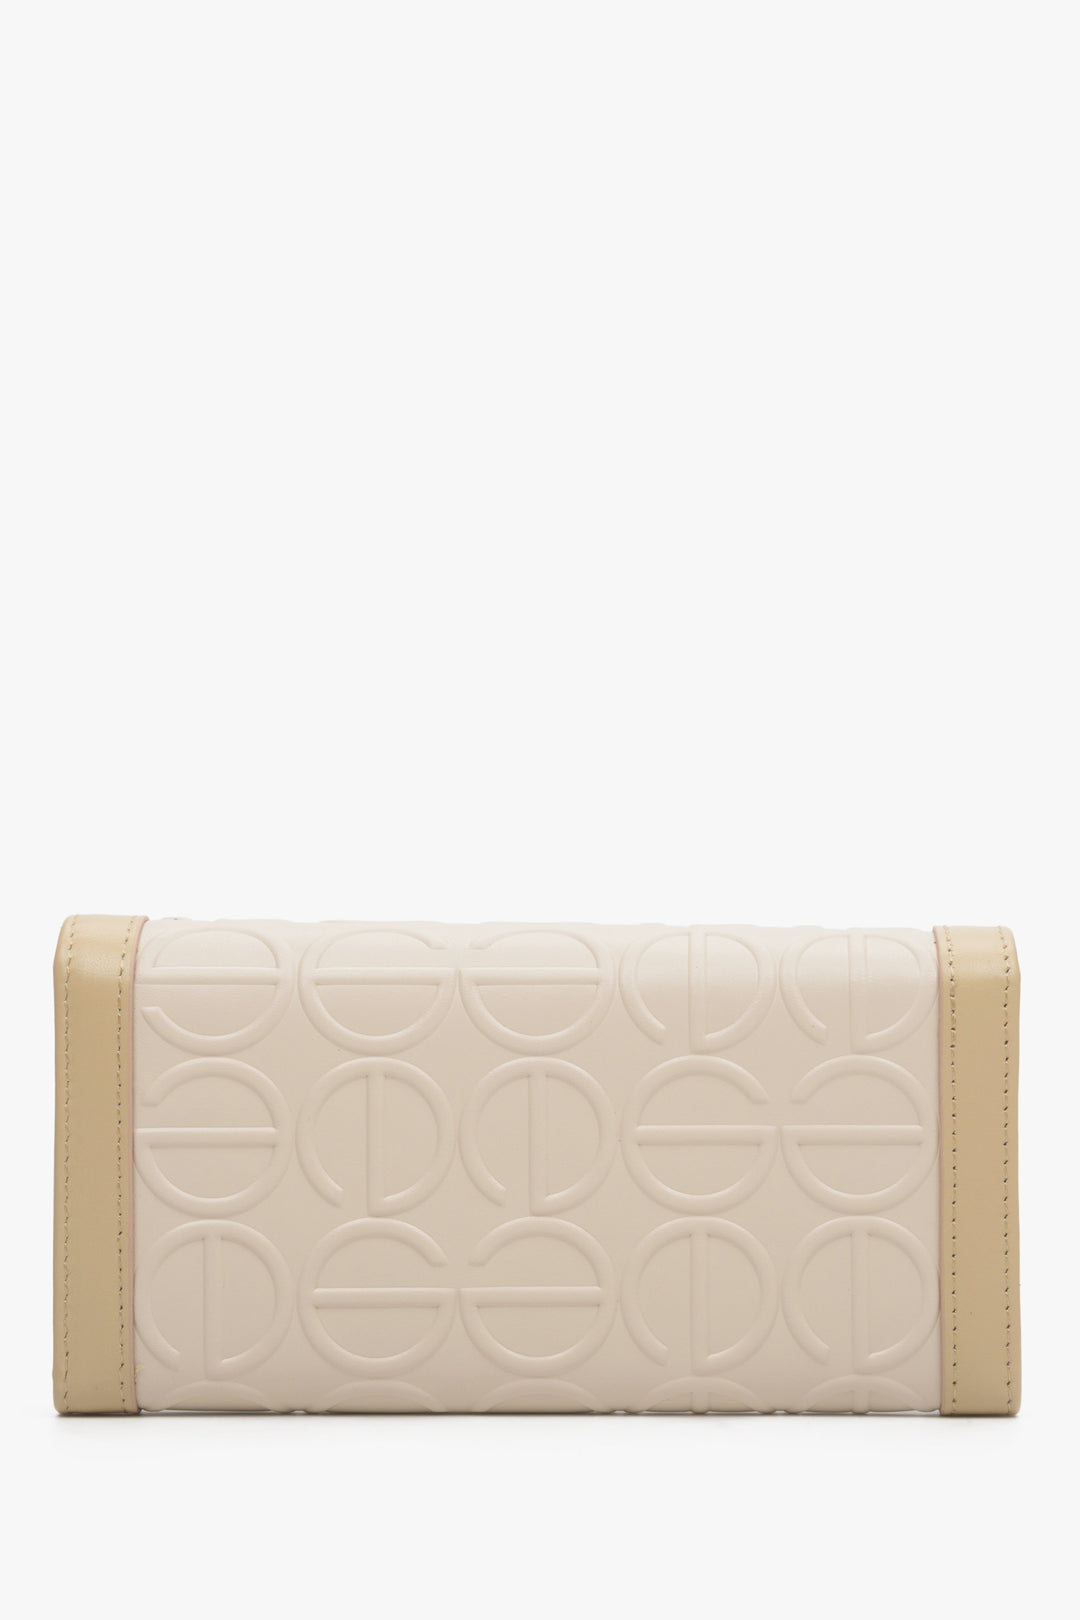 Beige leather, large women's wallet by Estro - reverse.